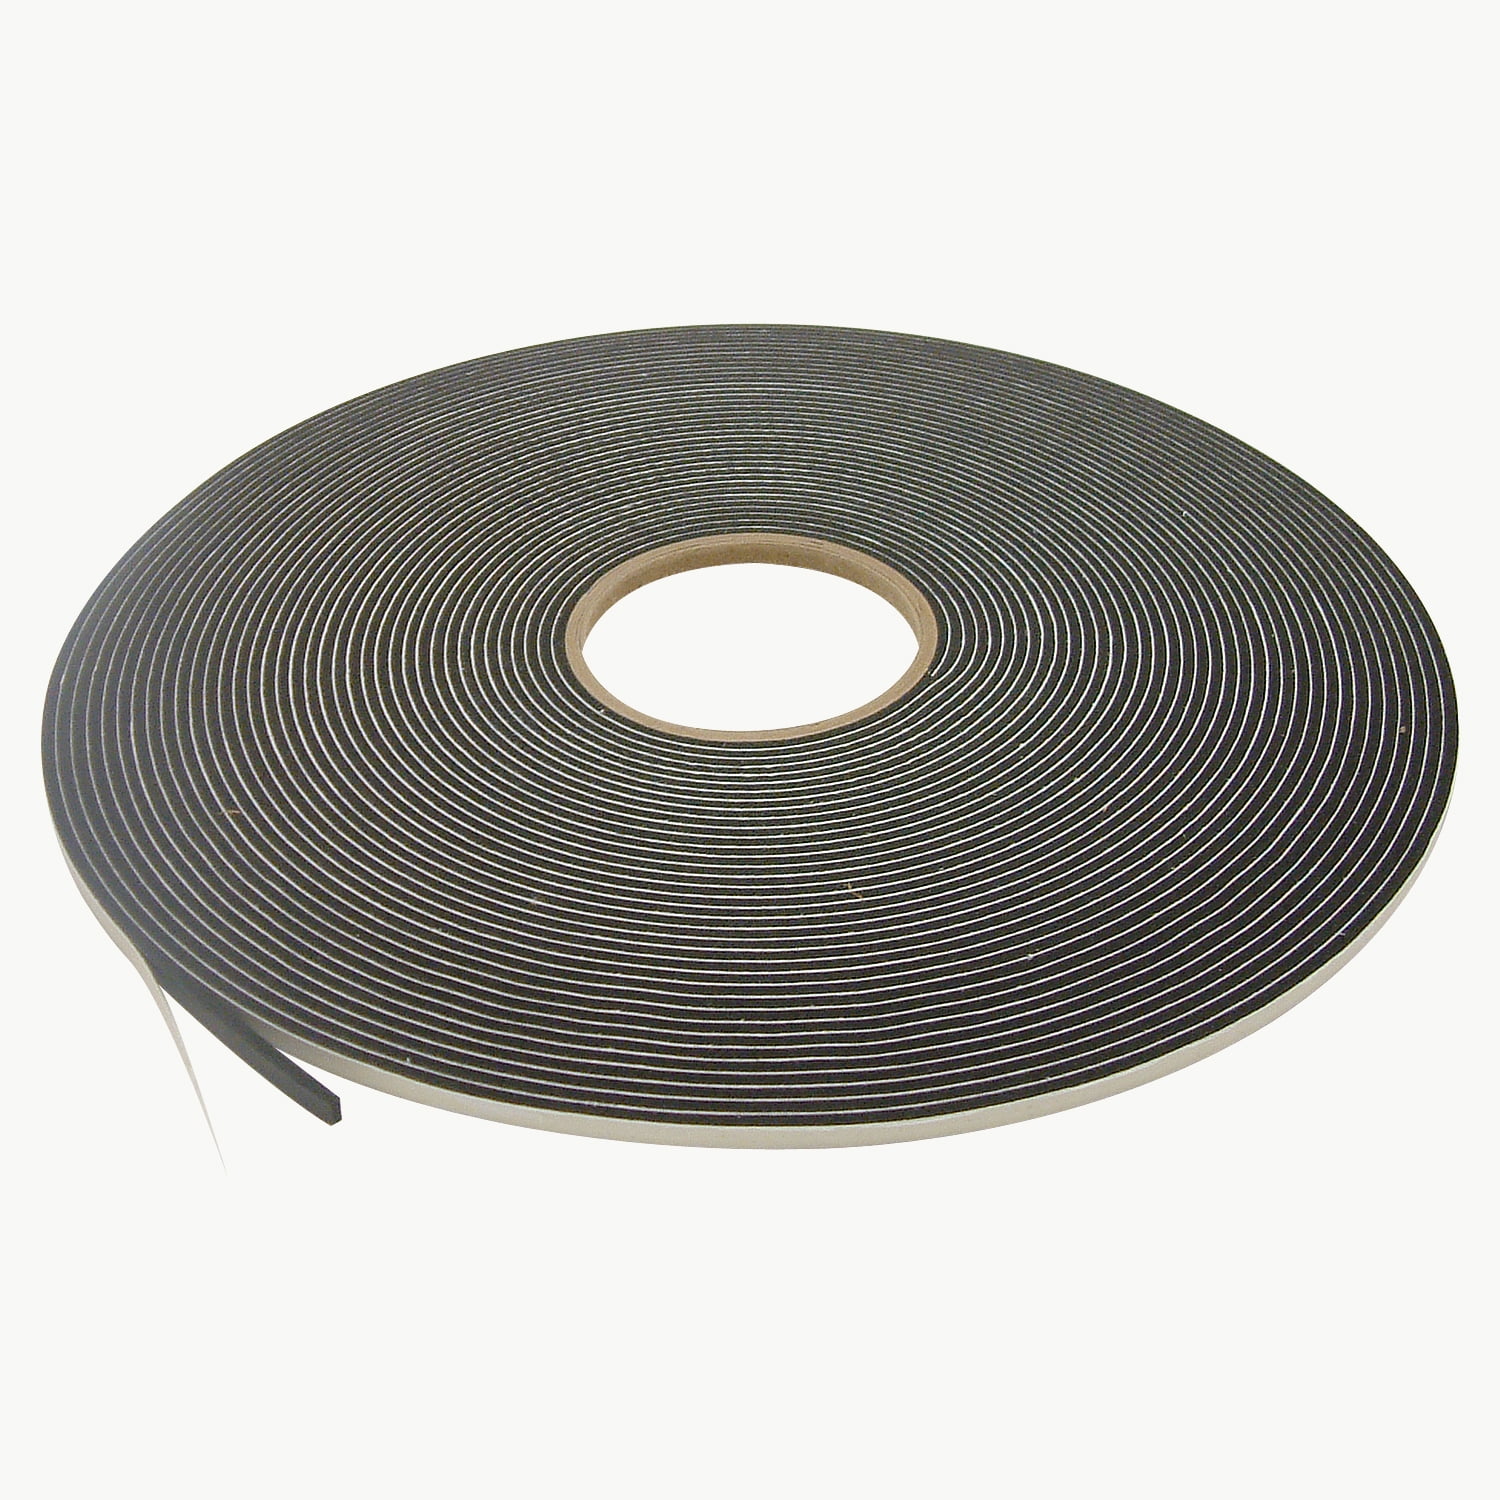 x 35 ft. JVCC SCF-01 Single Coated PVC Foam Tape: 1/4 in Black thick x 1/2 in 